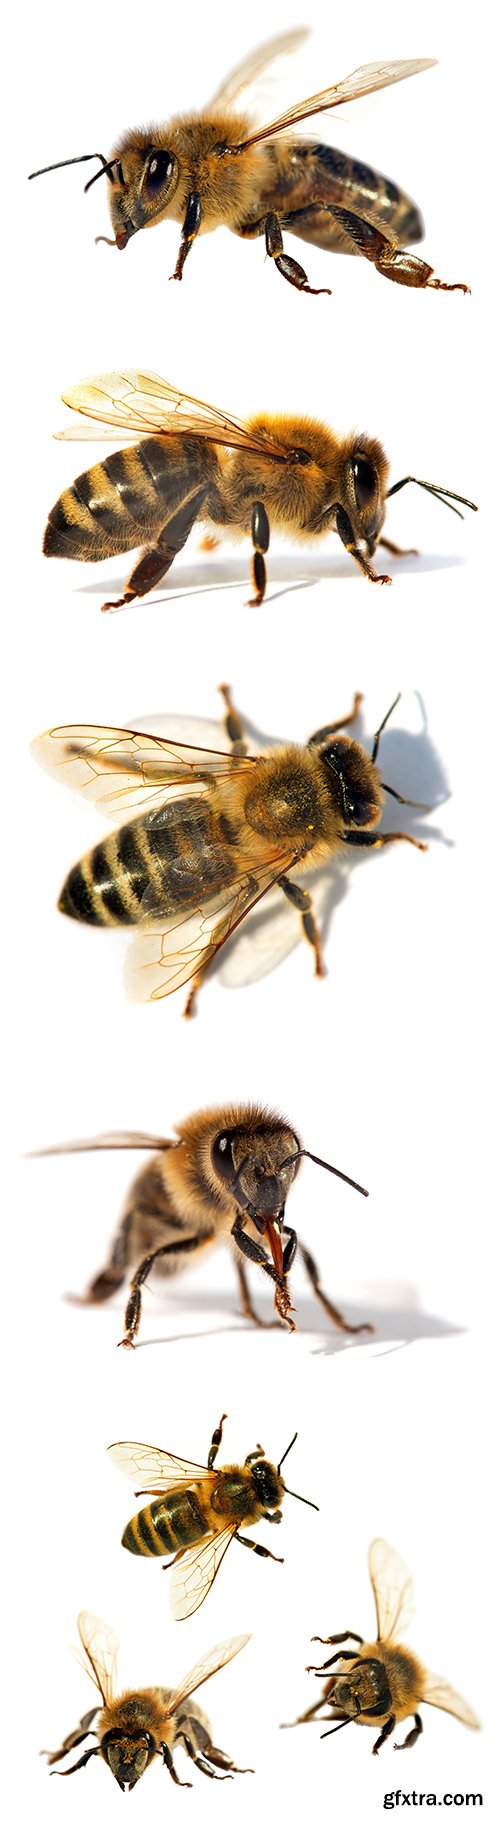 Bee Isolated - 13xJPGs